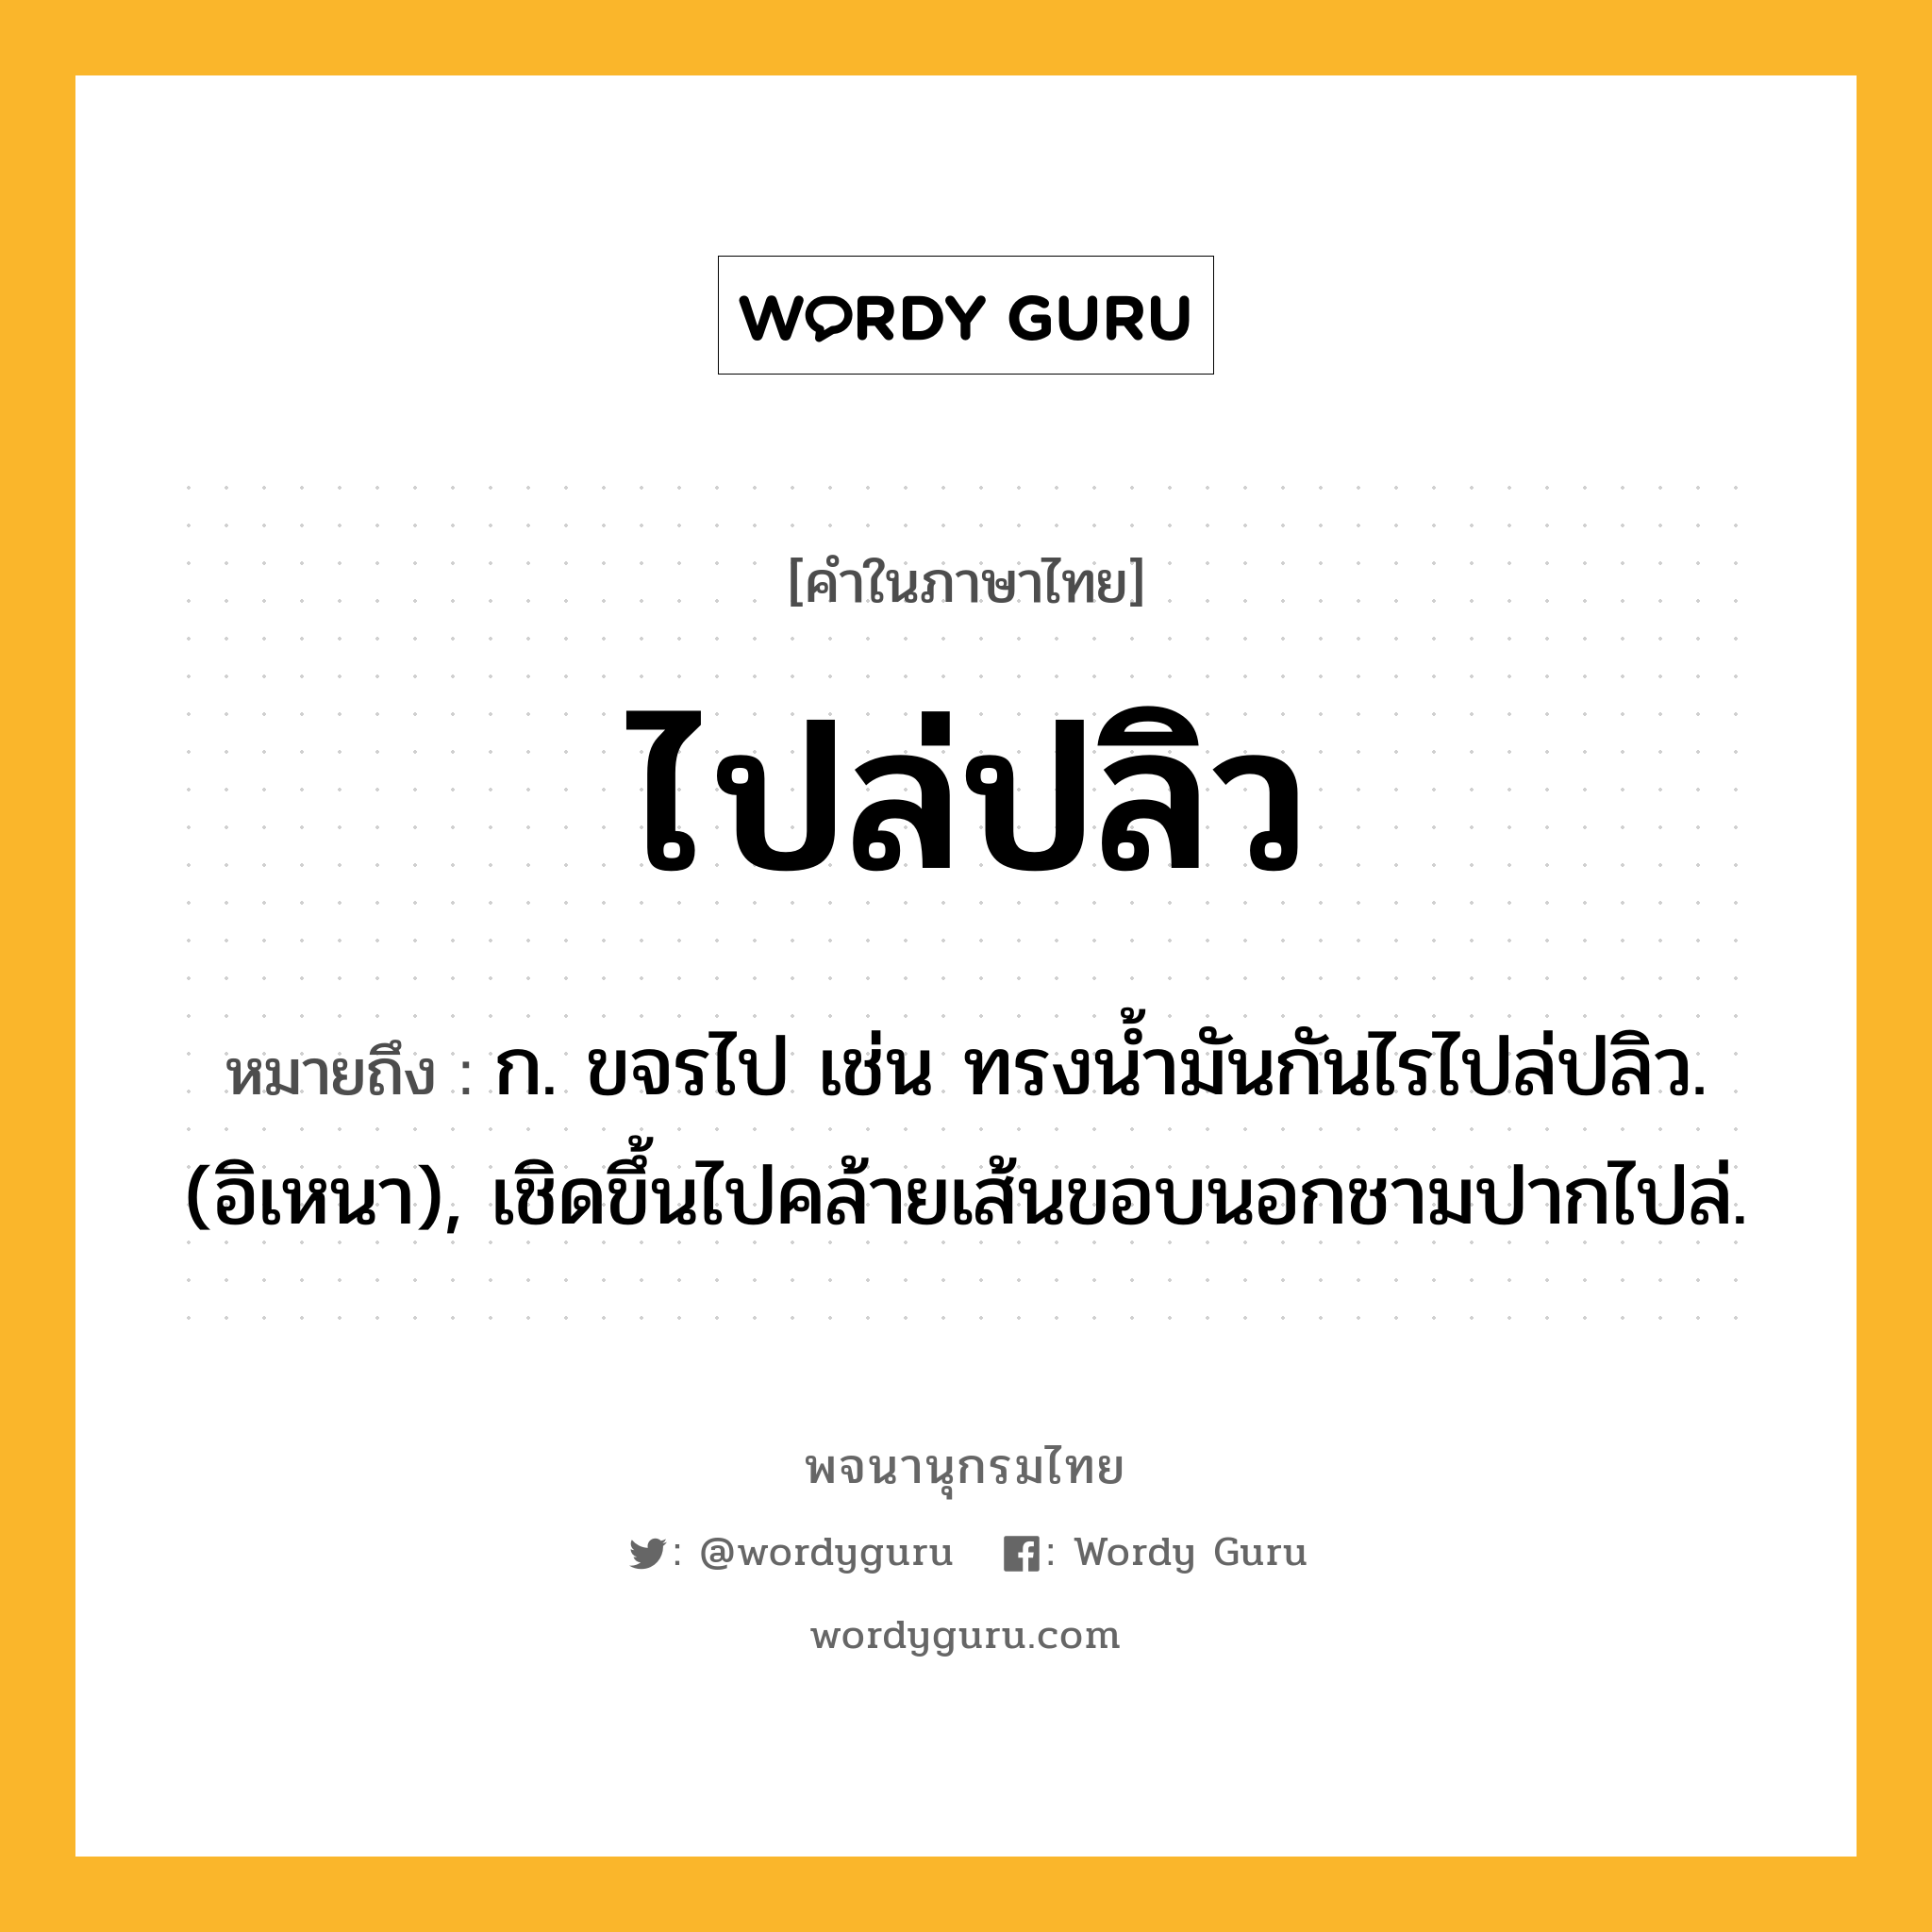 ไปล่ปลิว ความหมาย หมายถึงอะไร?, คำในภาษาไทย ไปล่ปลิว หมายถึง ก. ขจรไป เช่น ทรงนํ้ามันกันไรไปล่ปลิว. (อิเหนา), เชิดขึ้นไปคล้ายเส้นขอบนอกชามปากไปล่.